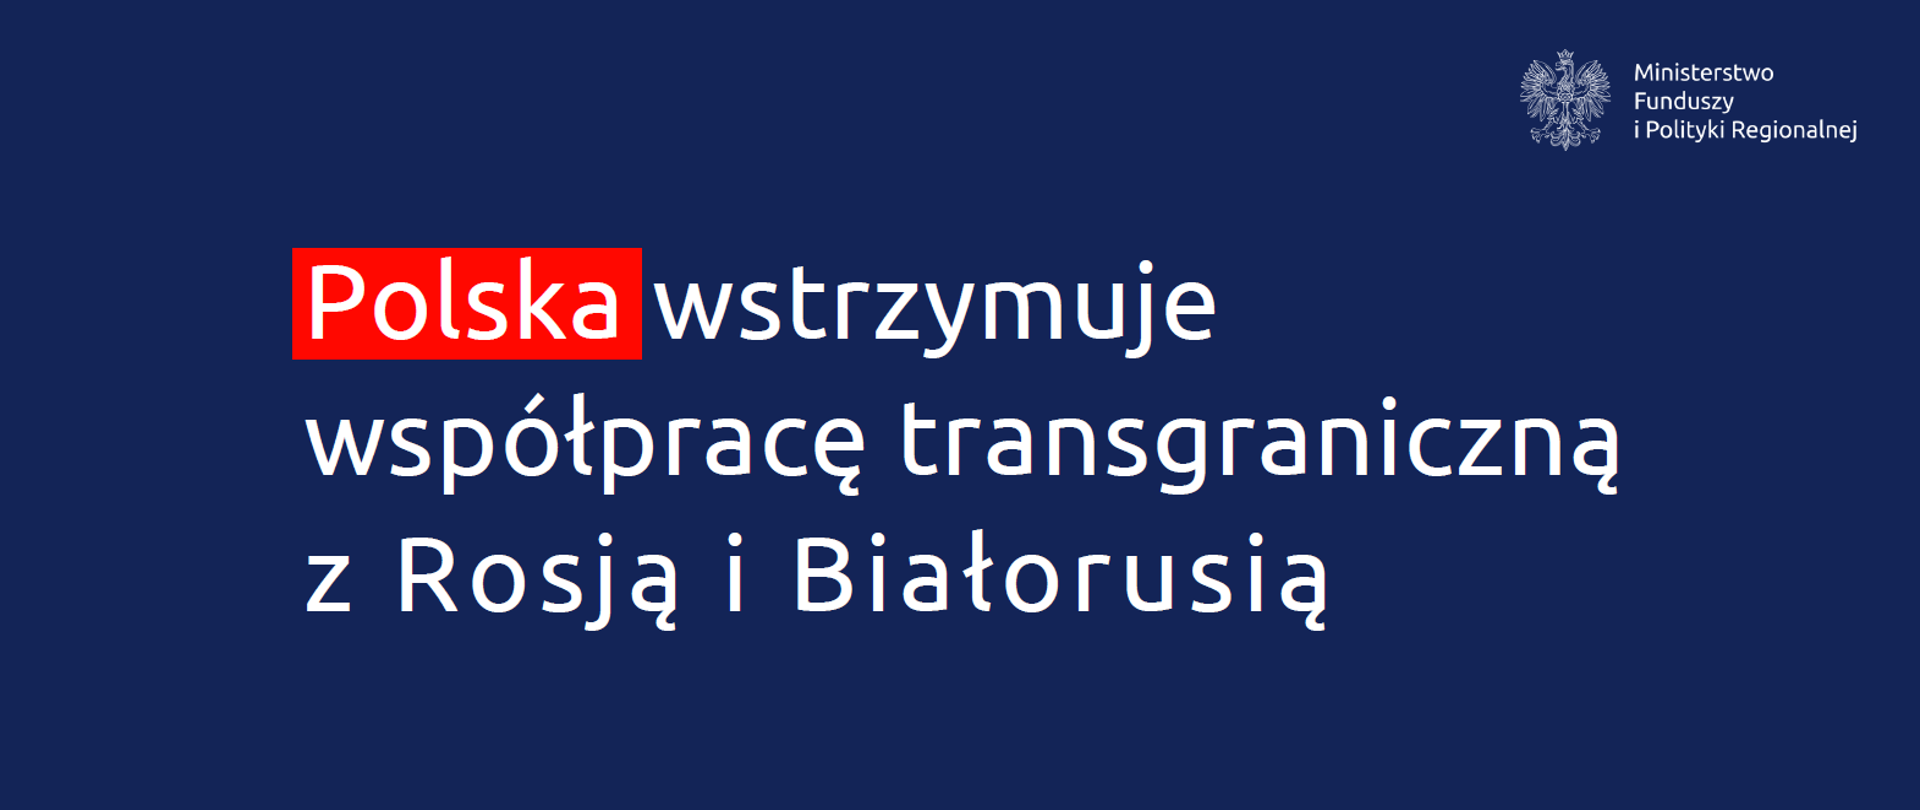 Polska wstrzymuje współpracę transgraniczną z Rosją i Białorusią